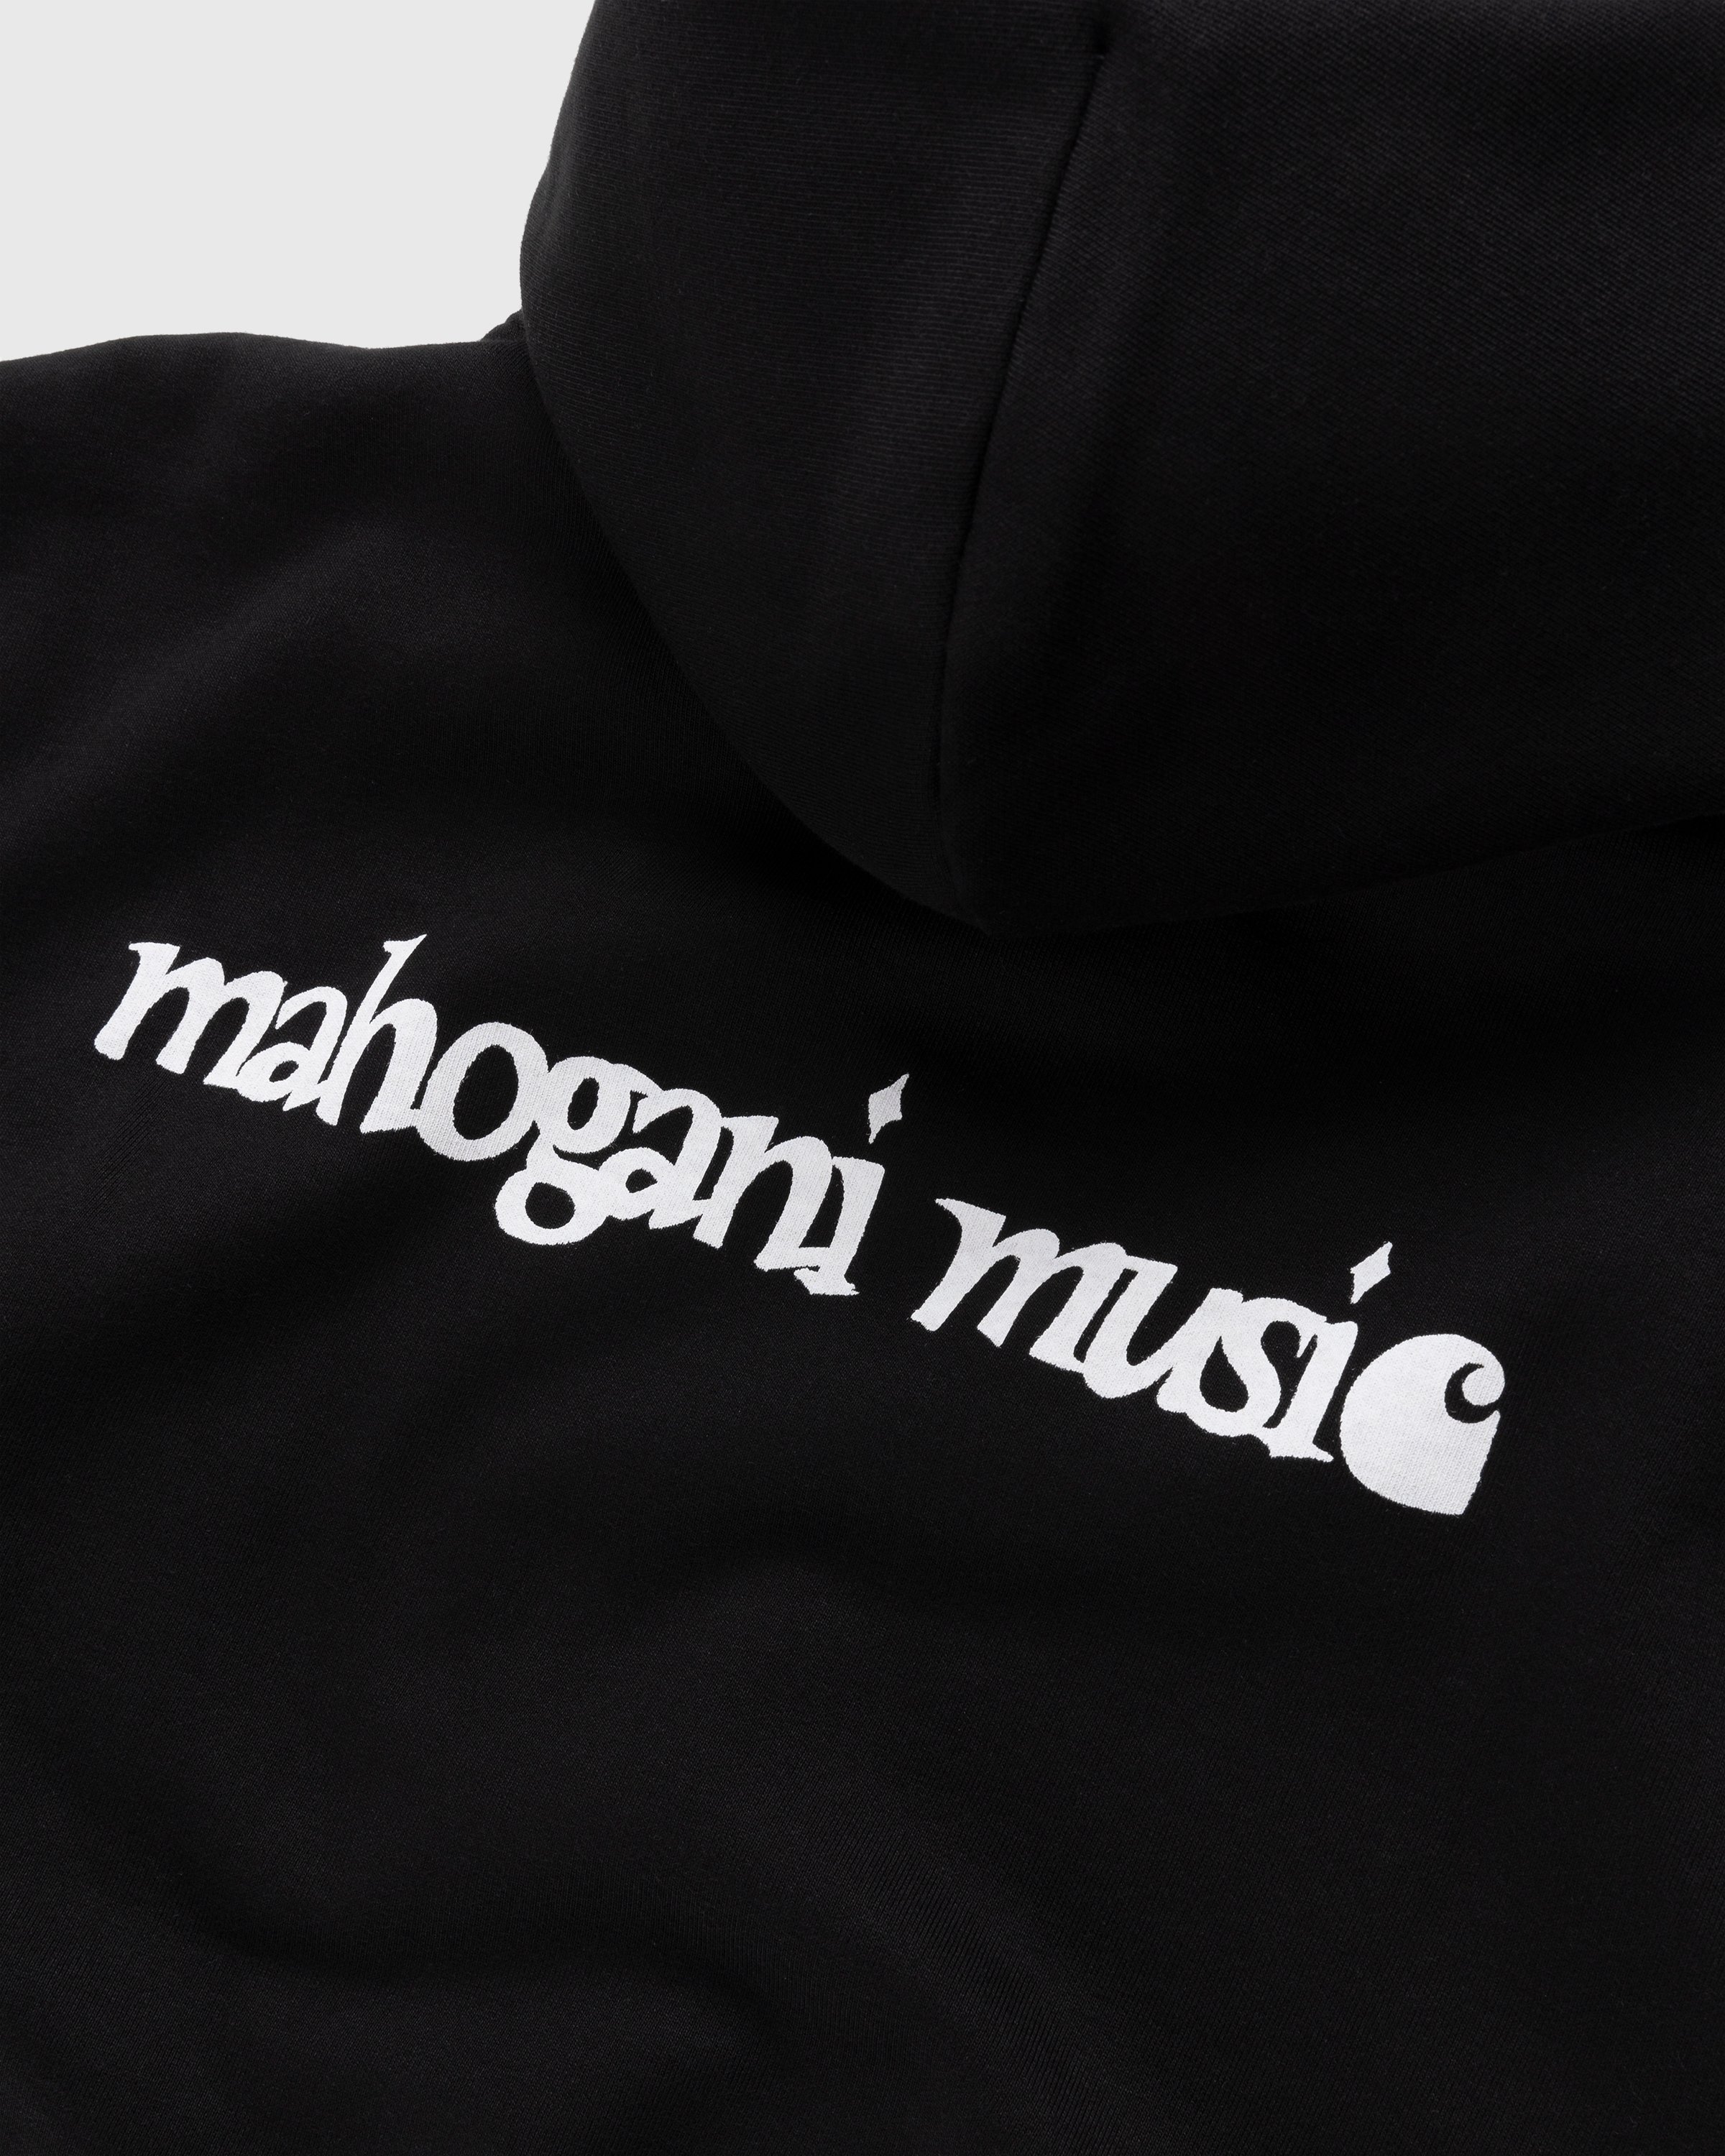 Carhartt WIP - Mahogani Music Hoodie Black/White - Clothing - Black - Image 3